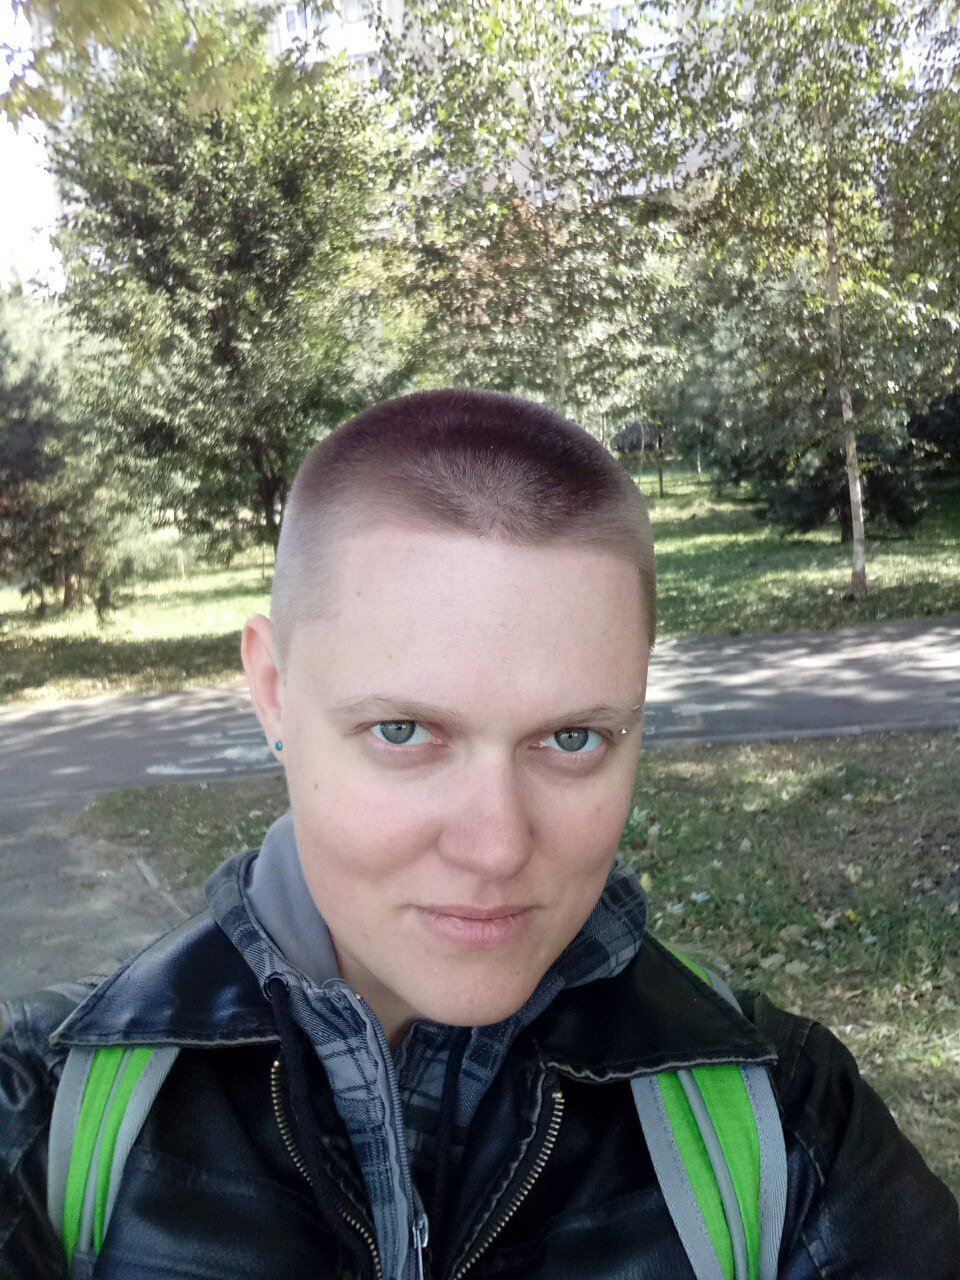 Альг Данковский – транс* парень из Украины, художник, ролевик